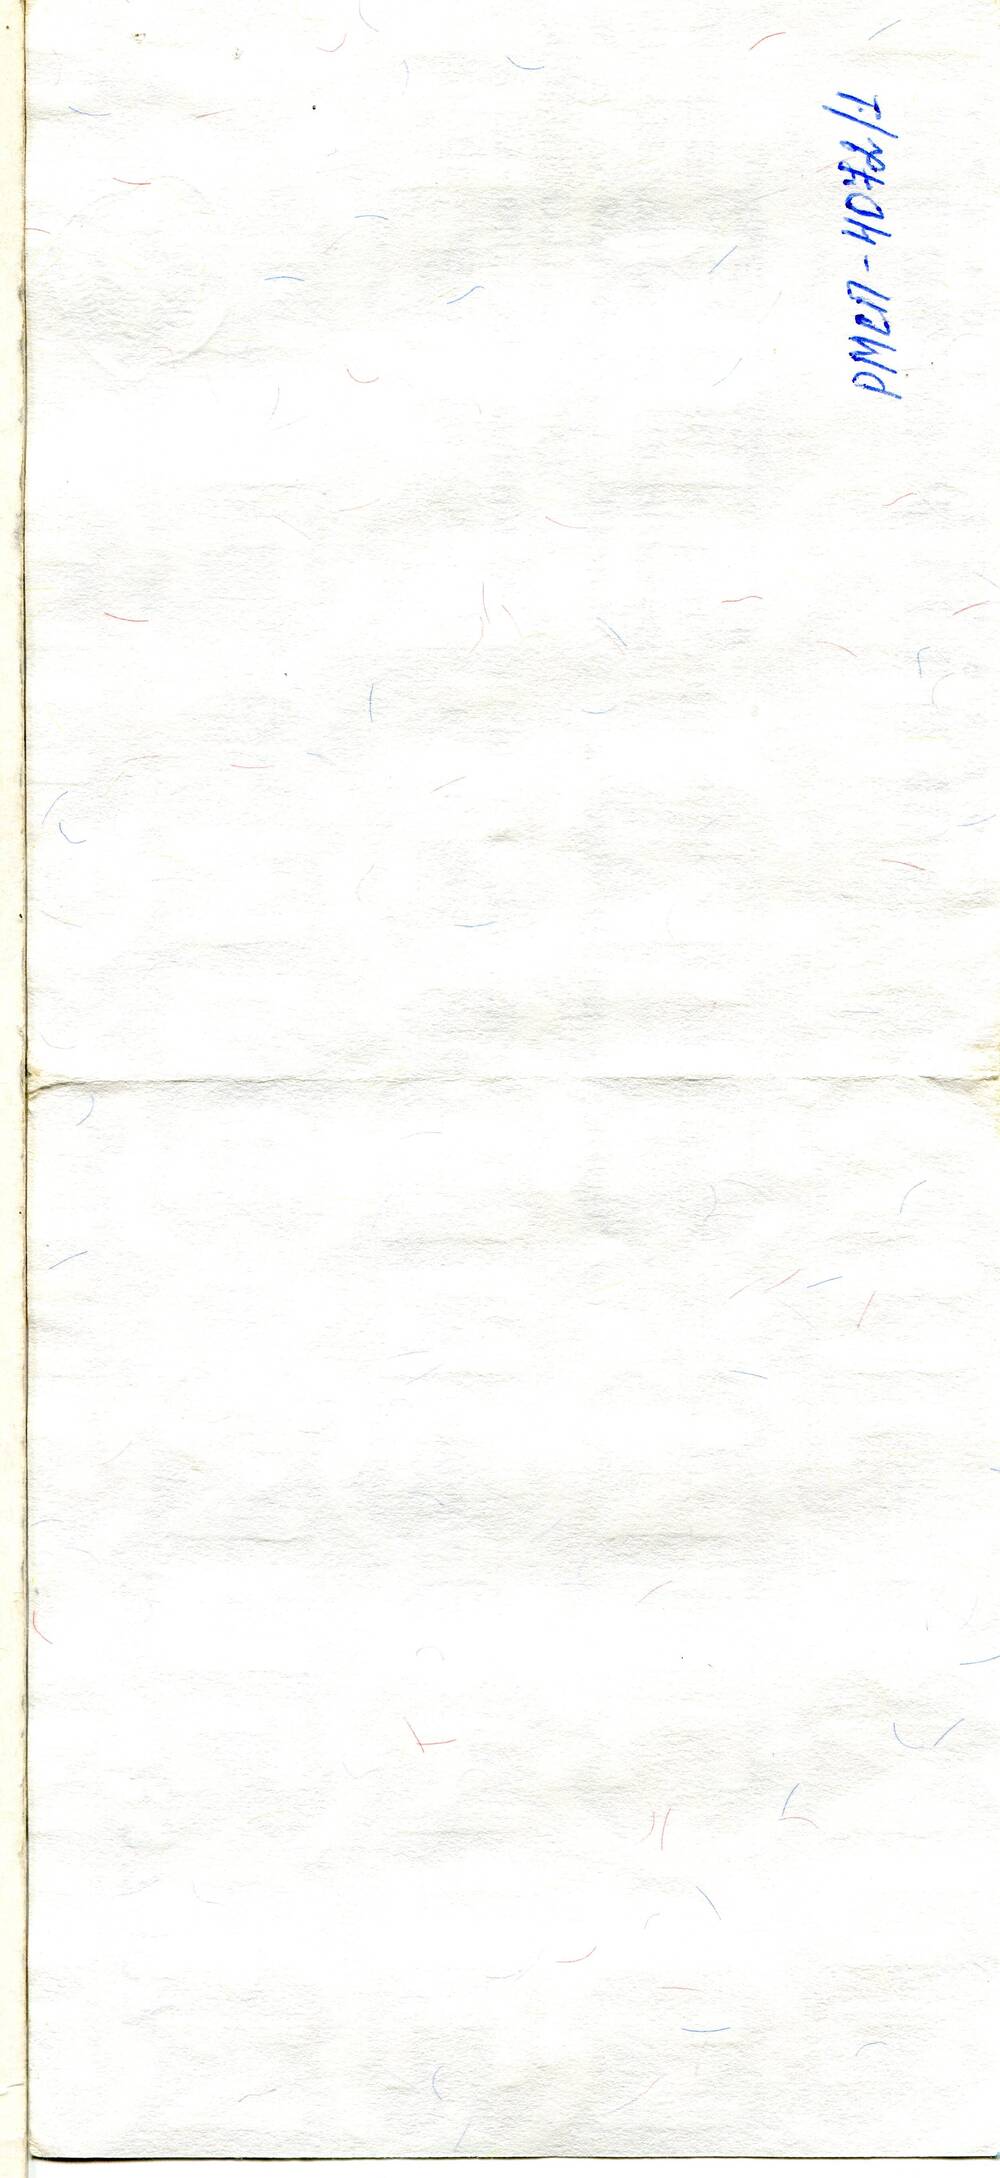 Документ. Проездной документ ЩС 2010021 337987 на имя Косарева ВИ. Российская Федерация, 2000 г.